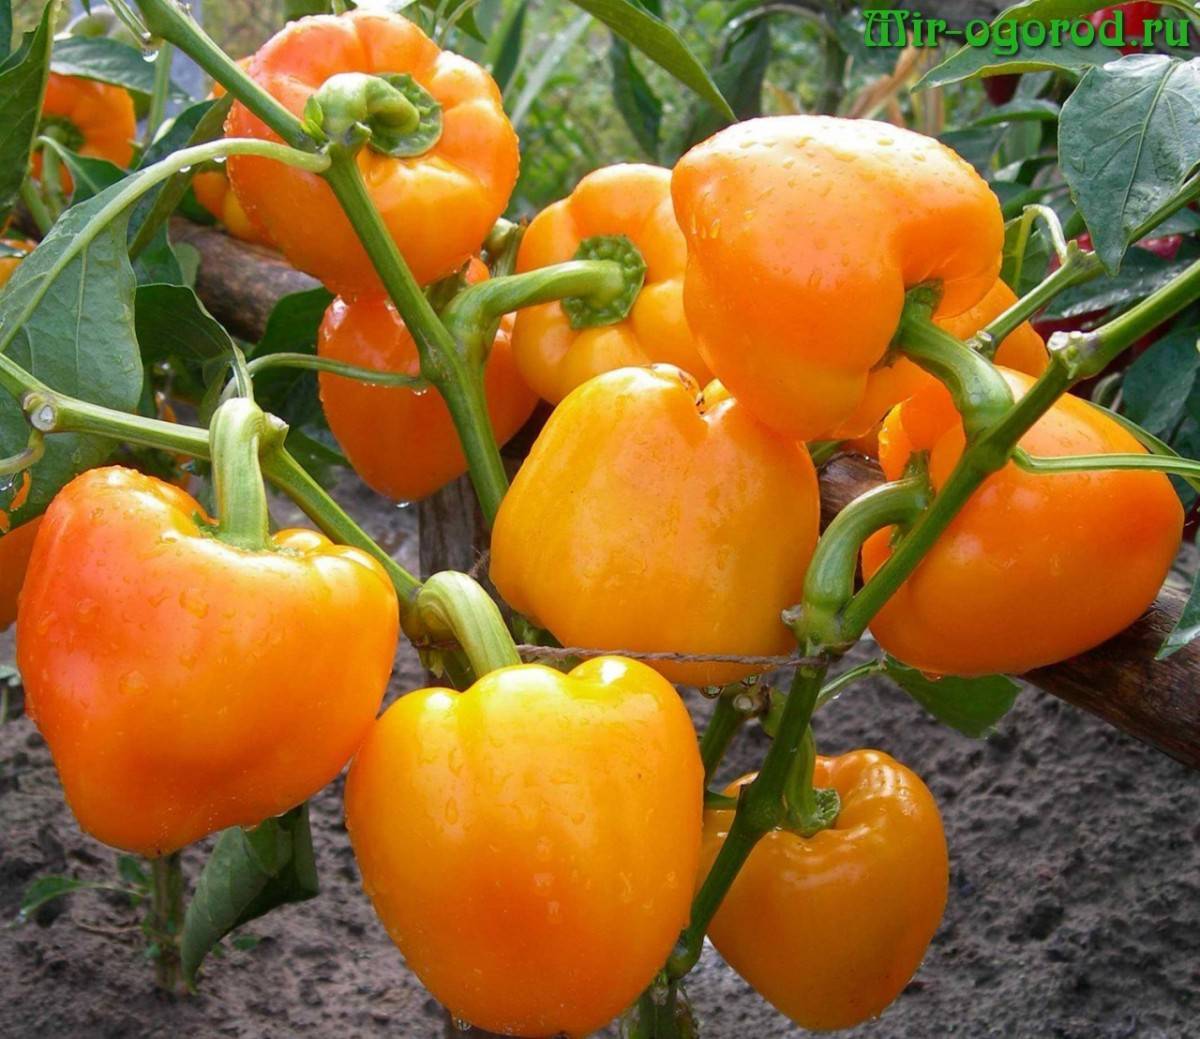 Лучшая схема подкормки томатов в теплице и открытом грунте. используйте эту таблицу весь сезон!